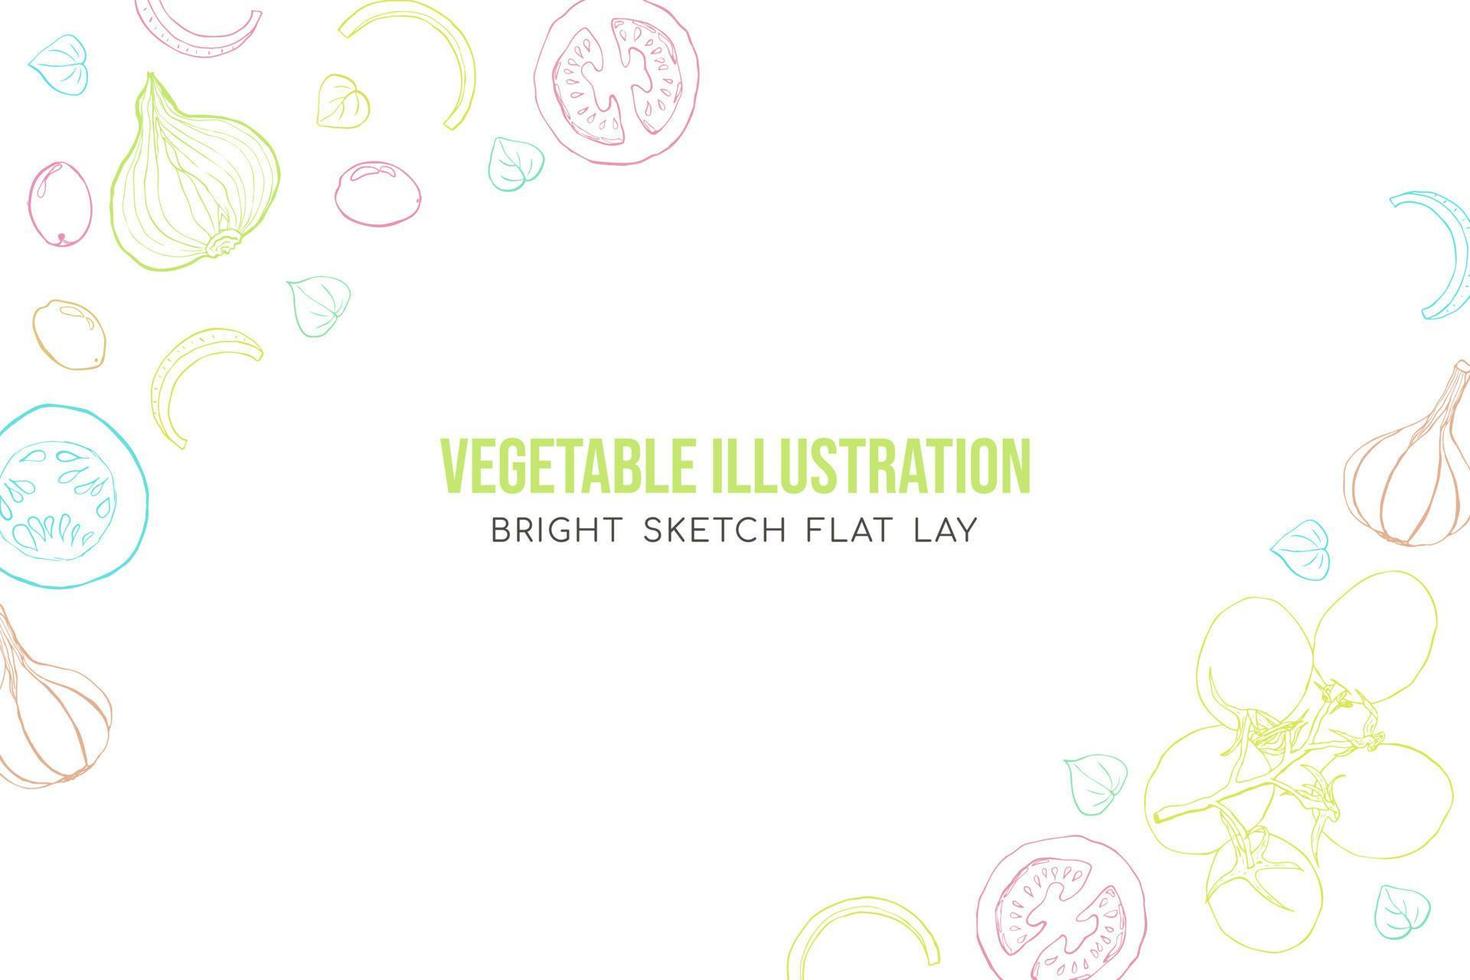 Vegetables sketch art illustration cover composition vector